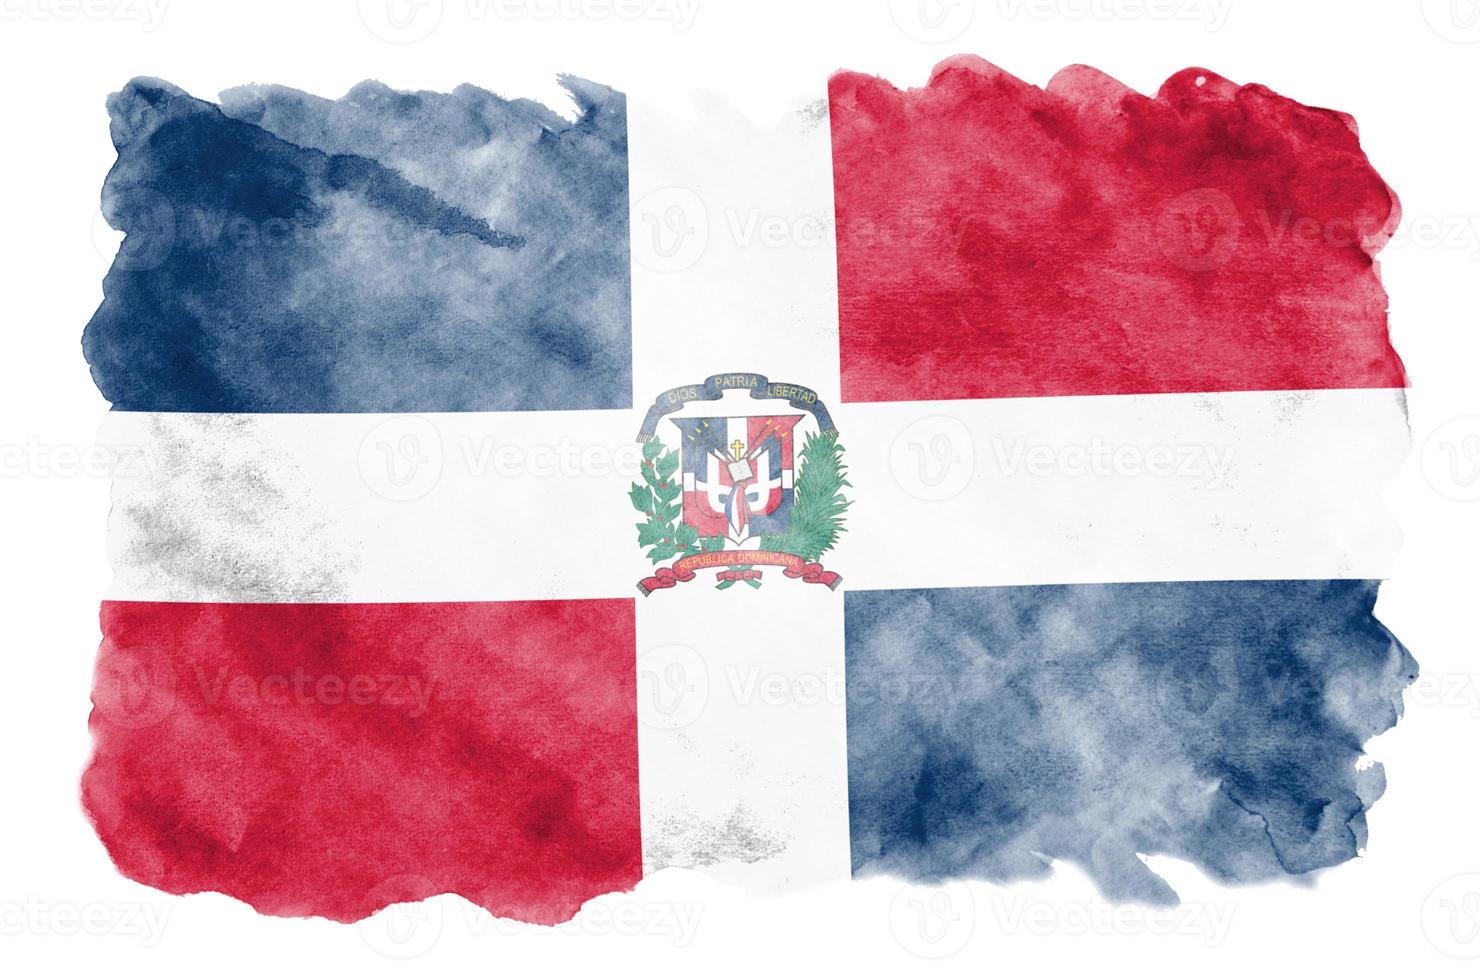 bandeira da república dominicana é retratada em estilo aquarela líquido isolado no fundo branco foto